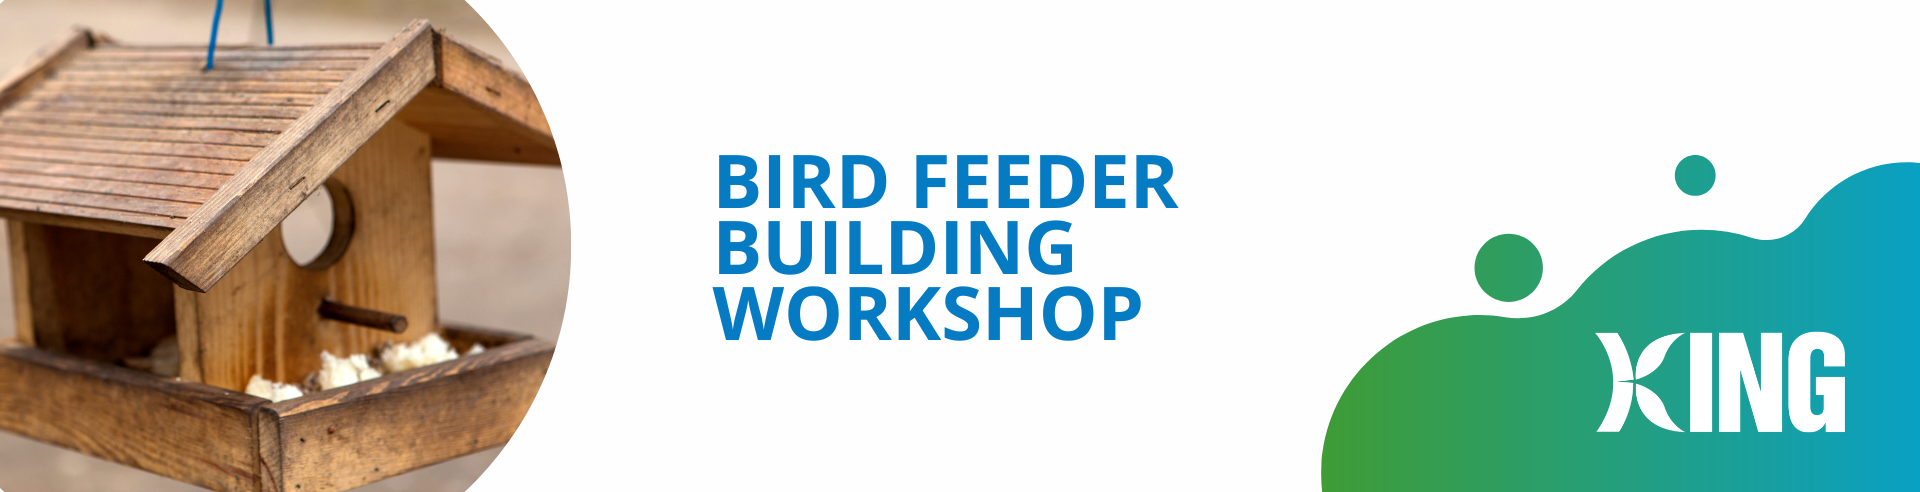 Bird Feeder Building Workshop Banner